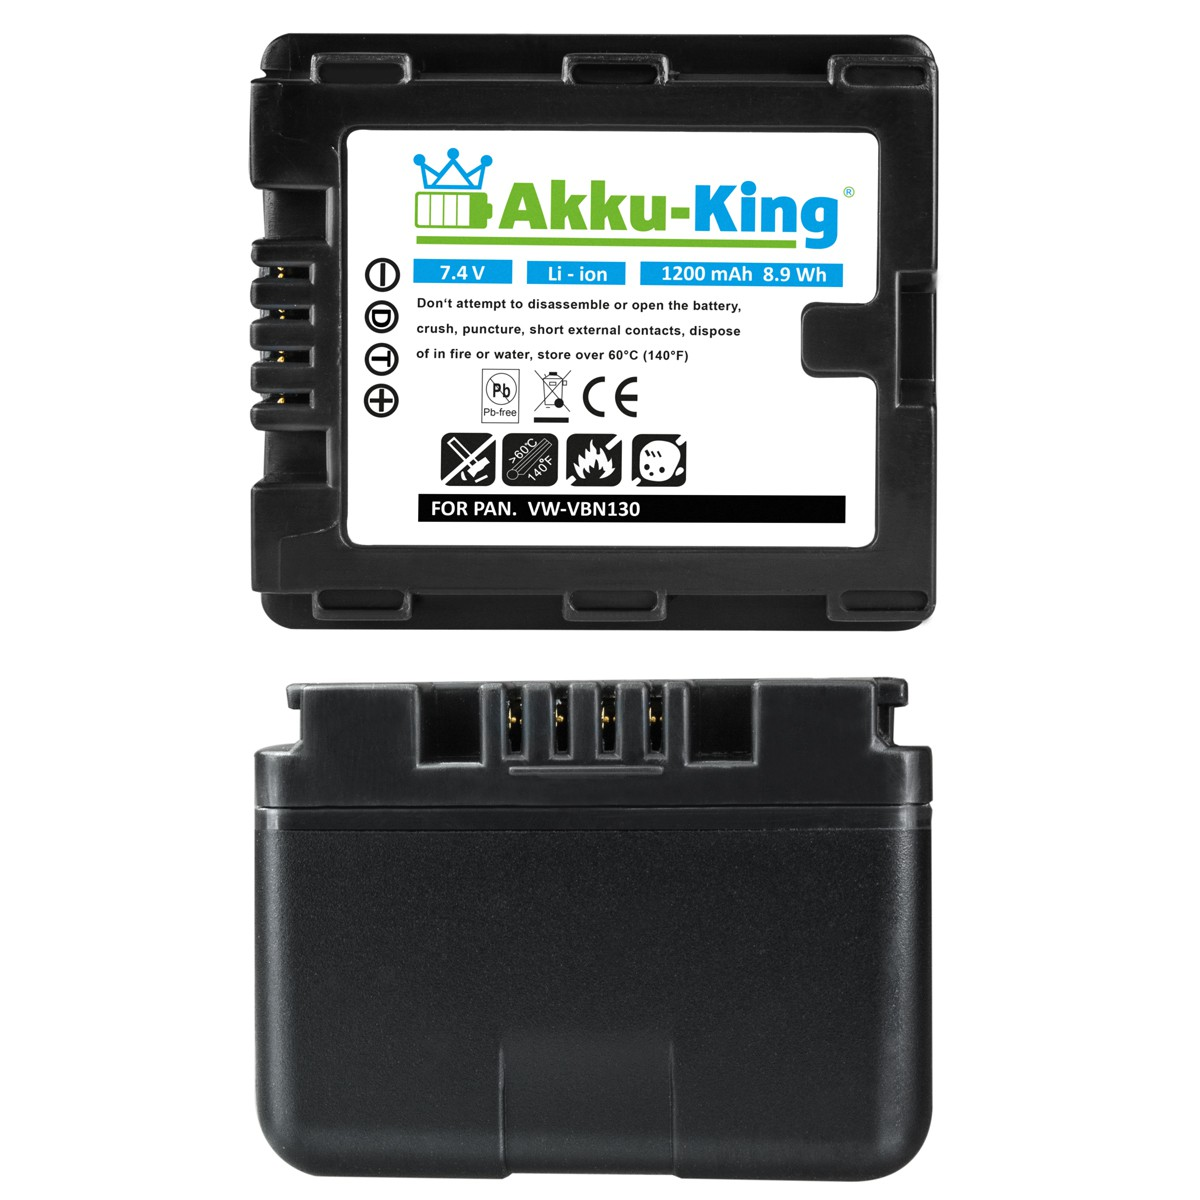 AKKU-KING 1200mAh Panasonic Akku Volt, VW-VBN130 Kamera-Akku, mit kompatibel Li-Ion 7.4